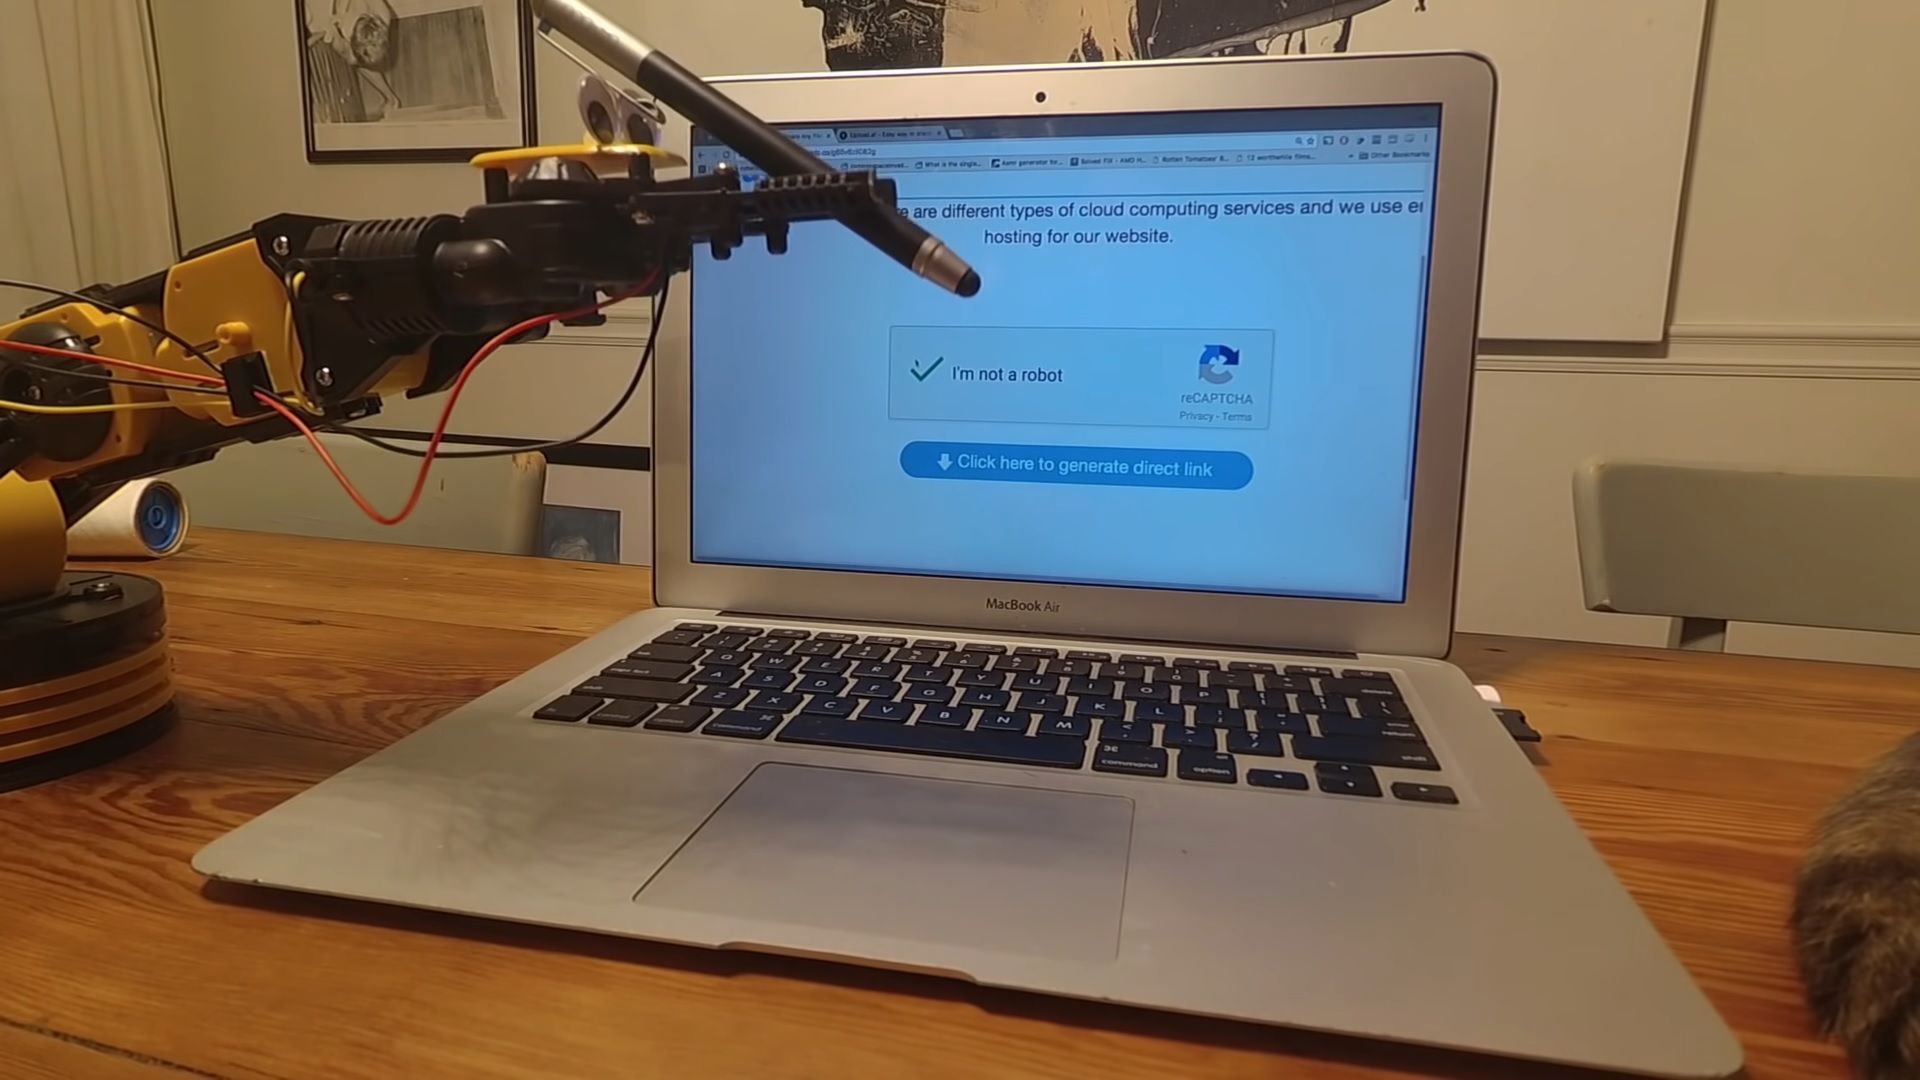 A robot completing a reCAPTCHA 